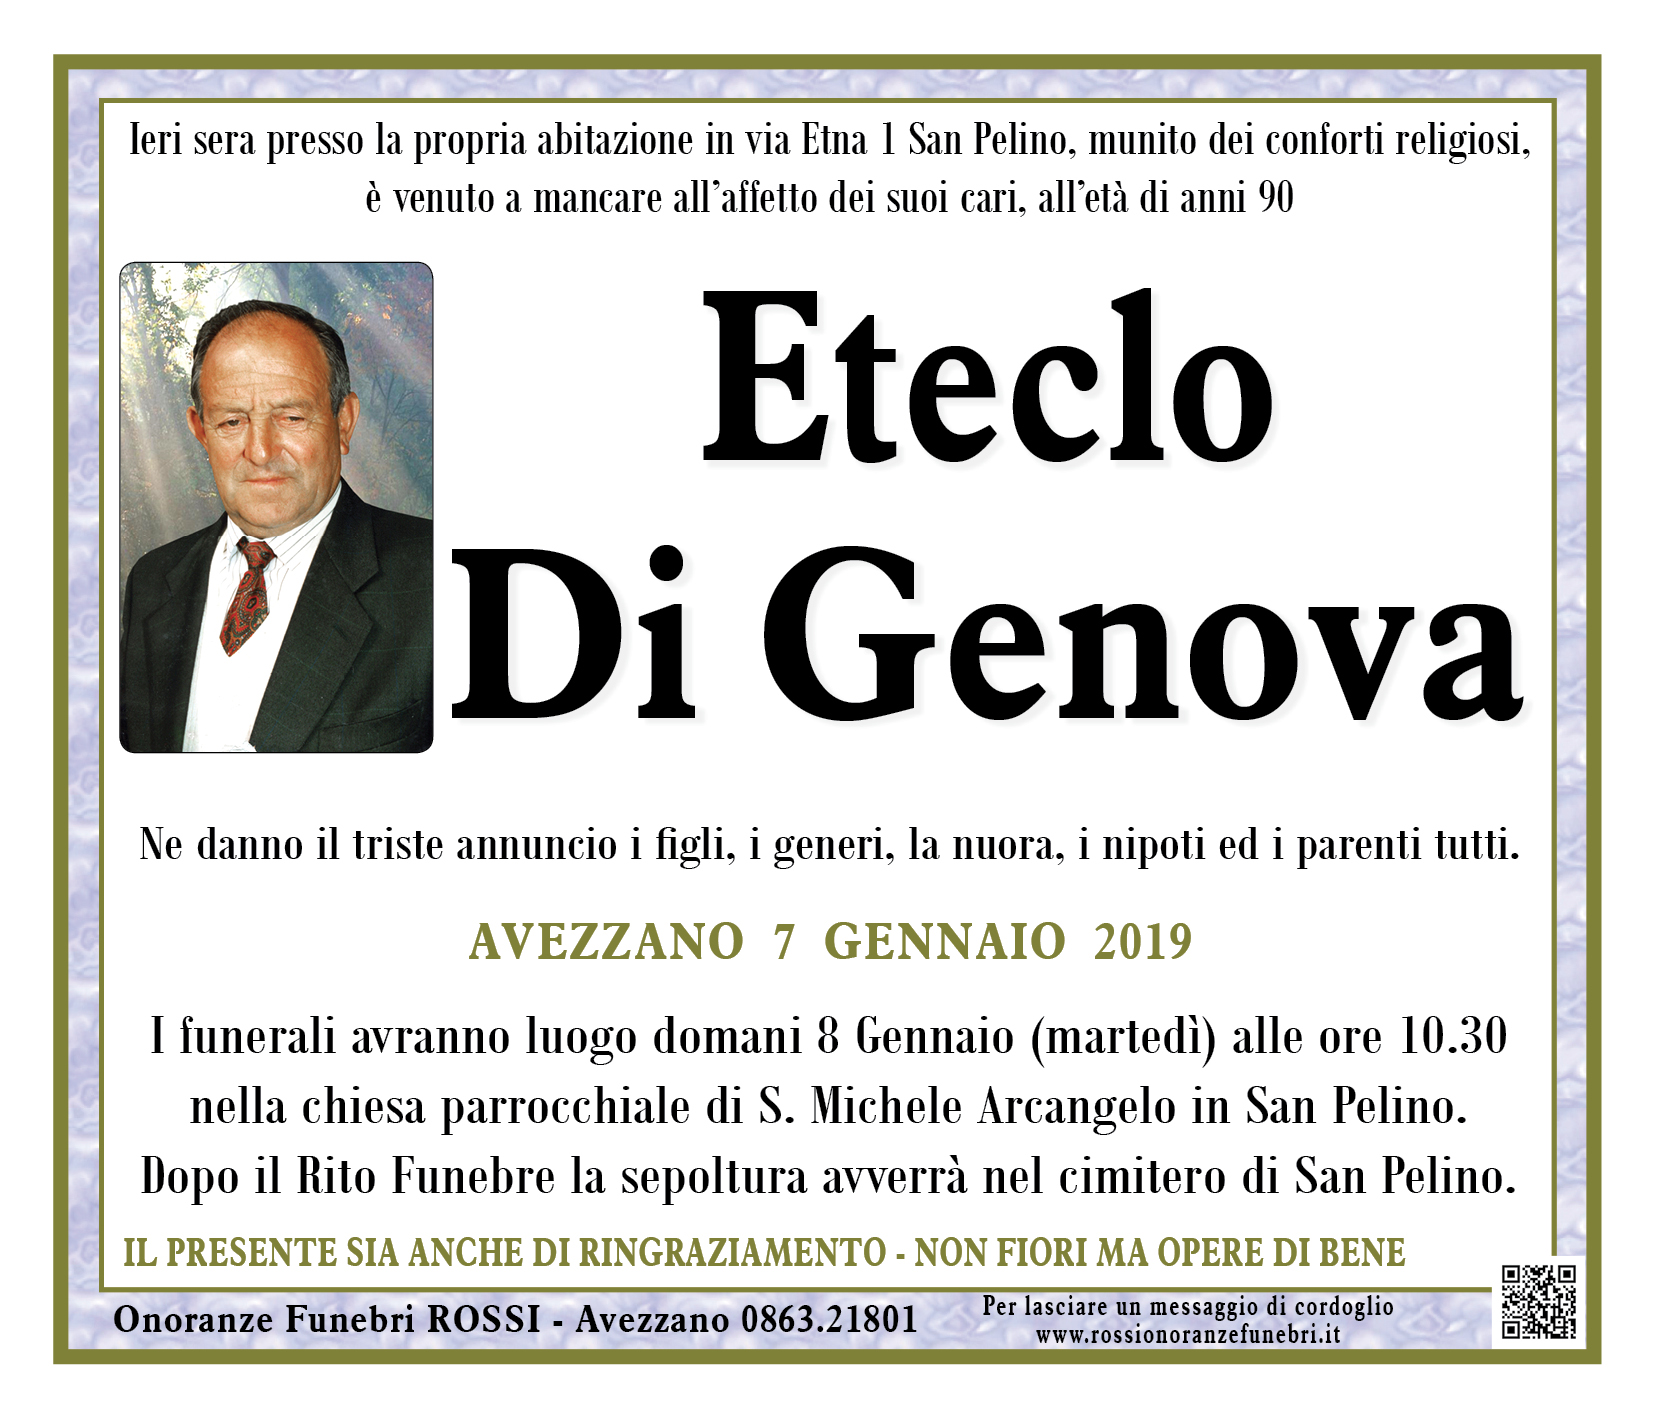 Eteclo Di Genova